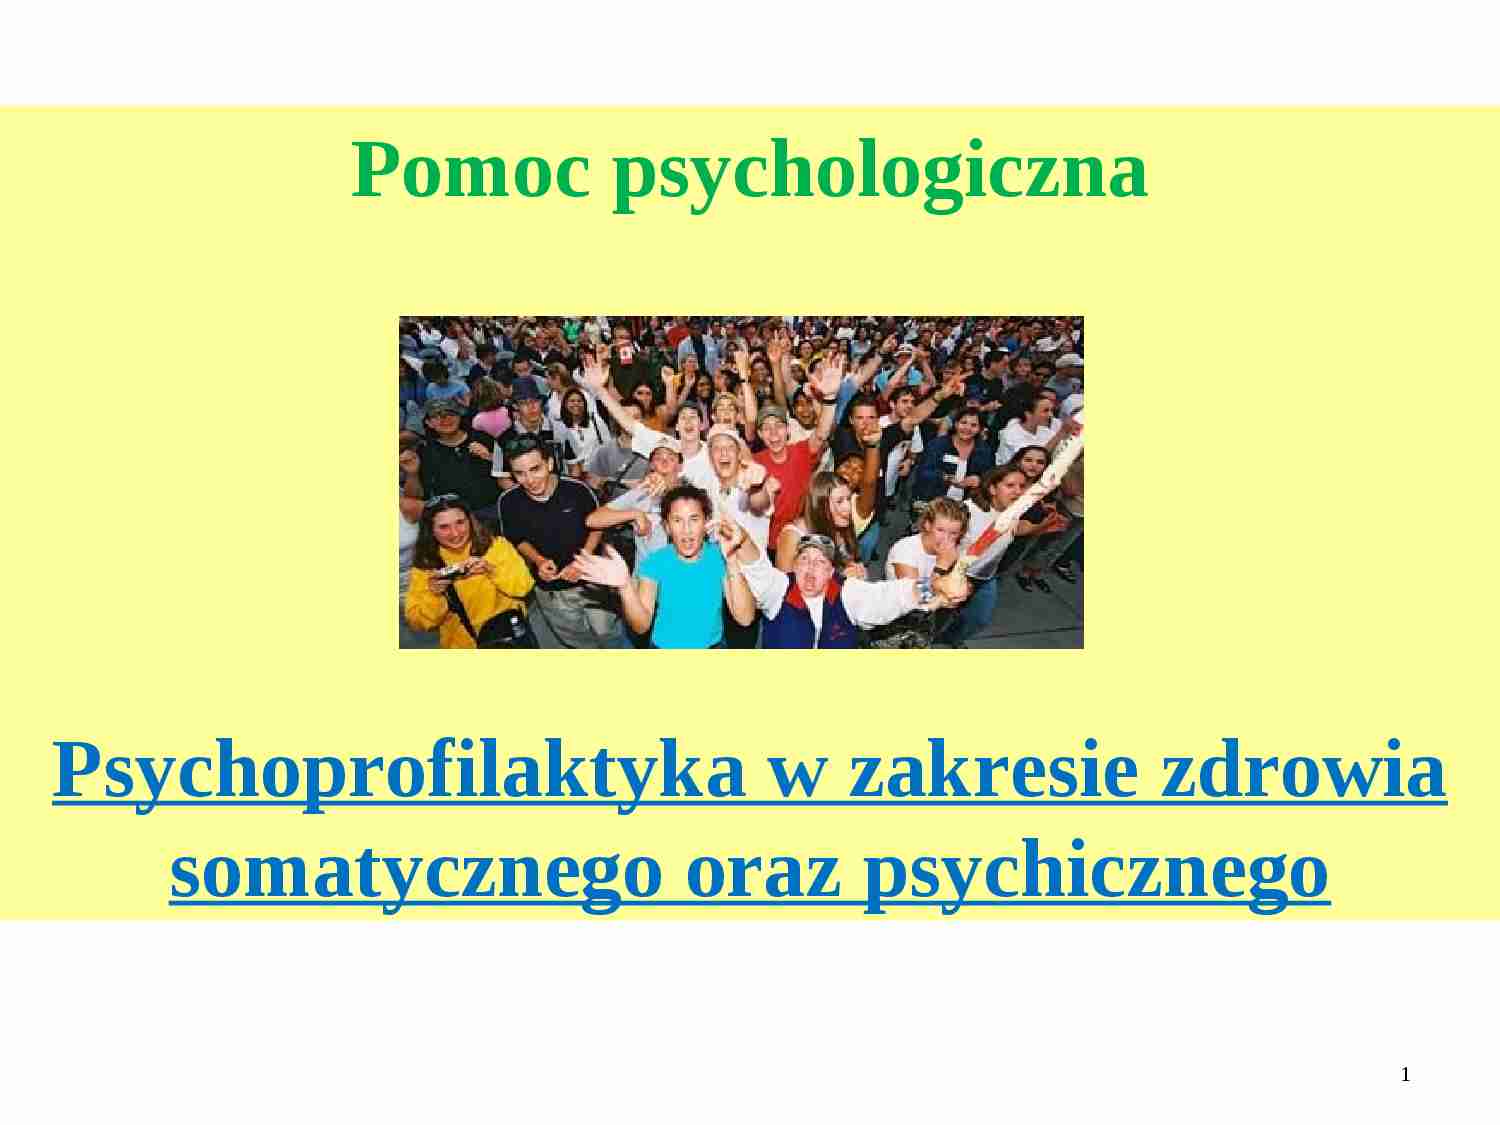 Psychoprofilaktyka w zakresie zdrowia somatycznego oraz psychicznego - strona 1